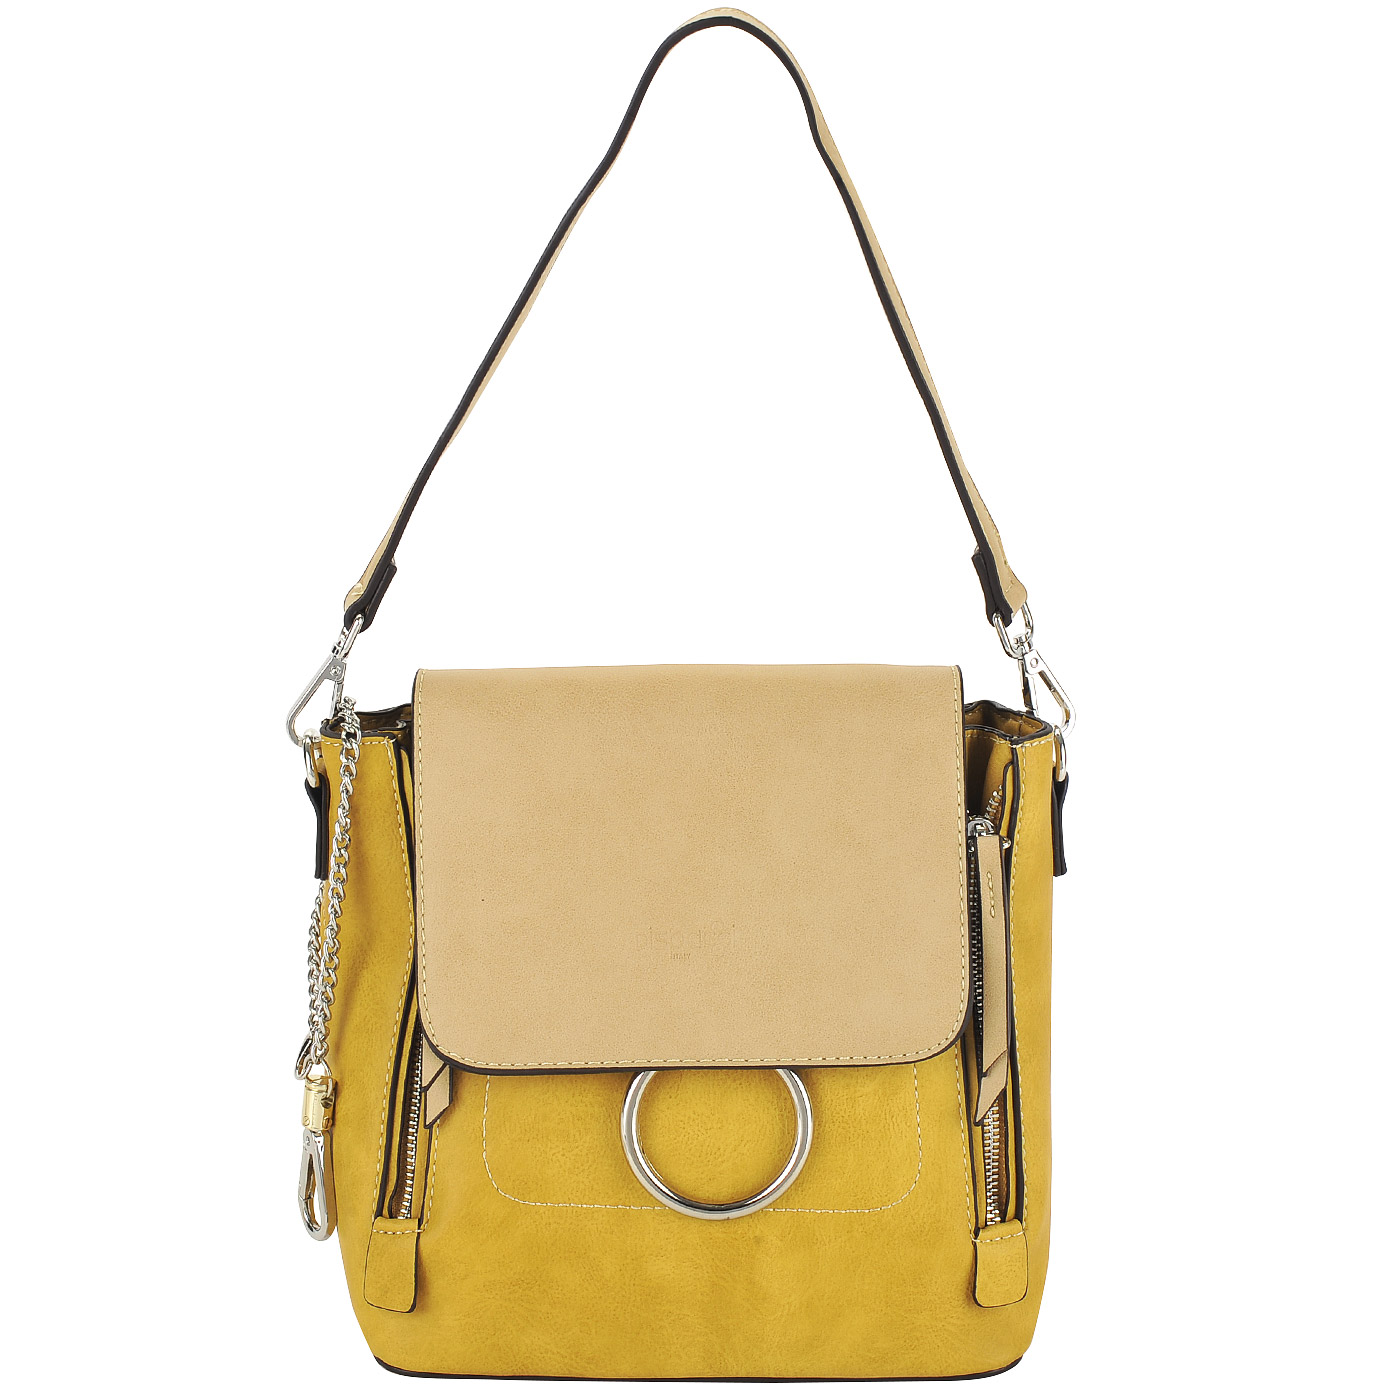 Dispacci Практичная женская сумка-рюкзак из экокожи желтого цвета